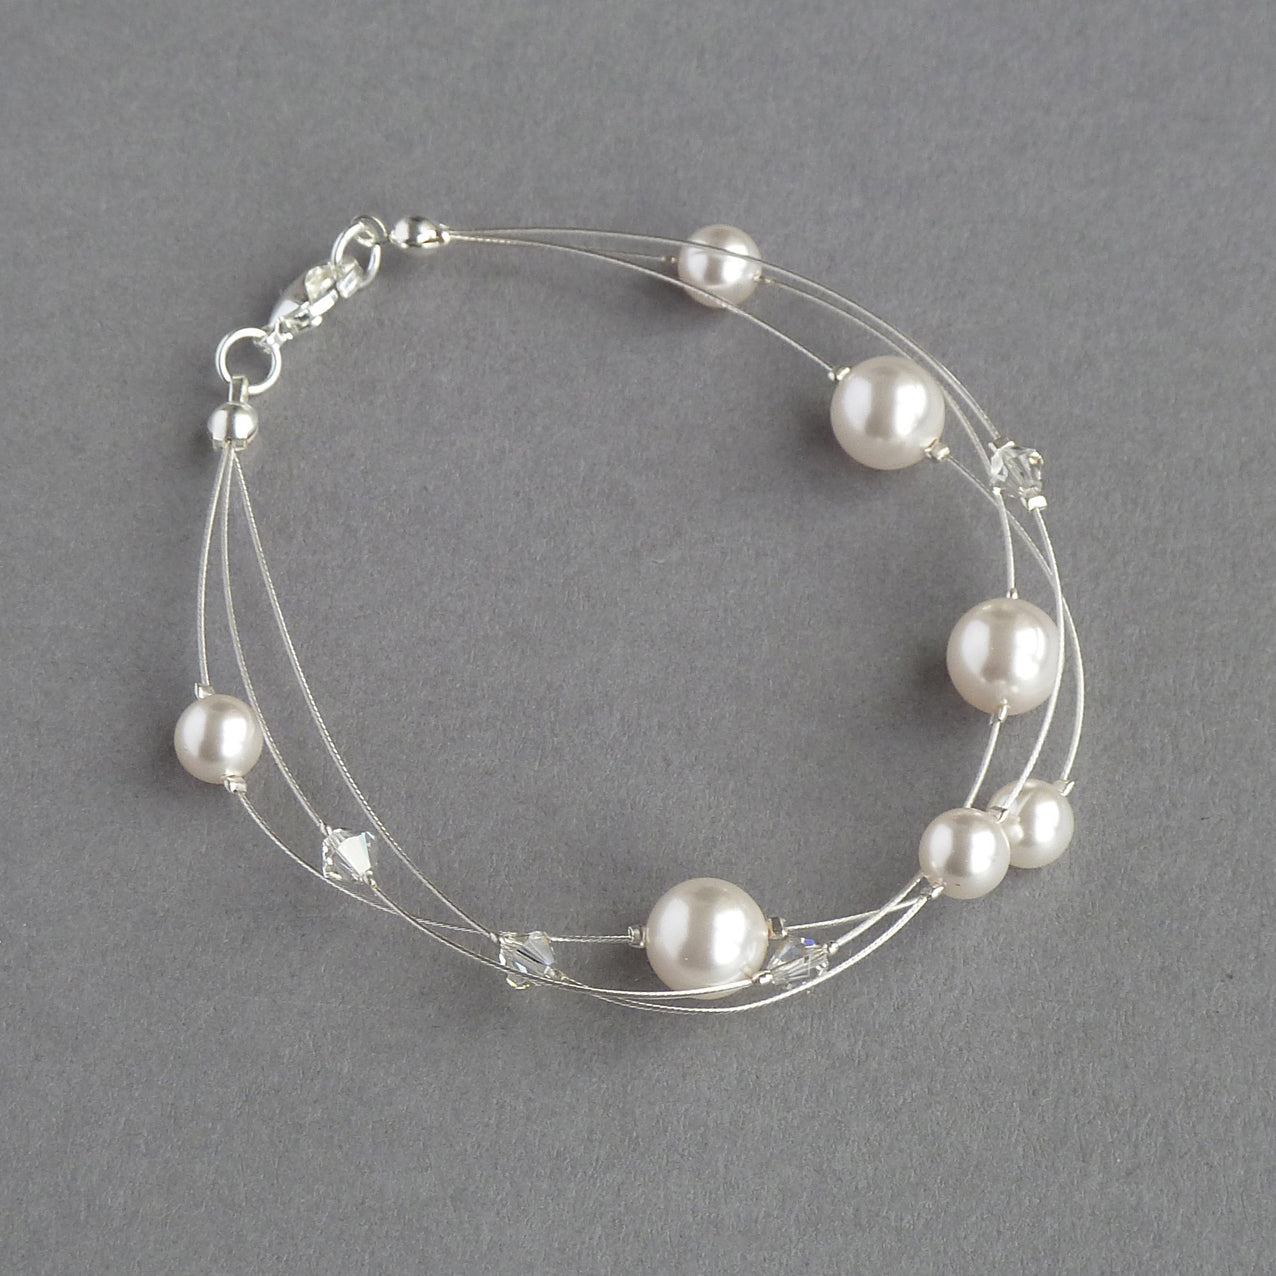 White floating pearl bracelet